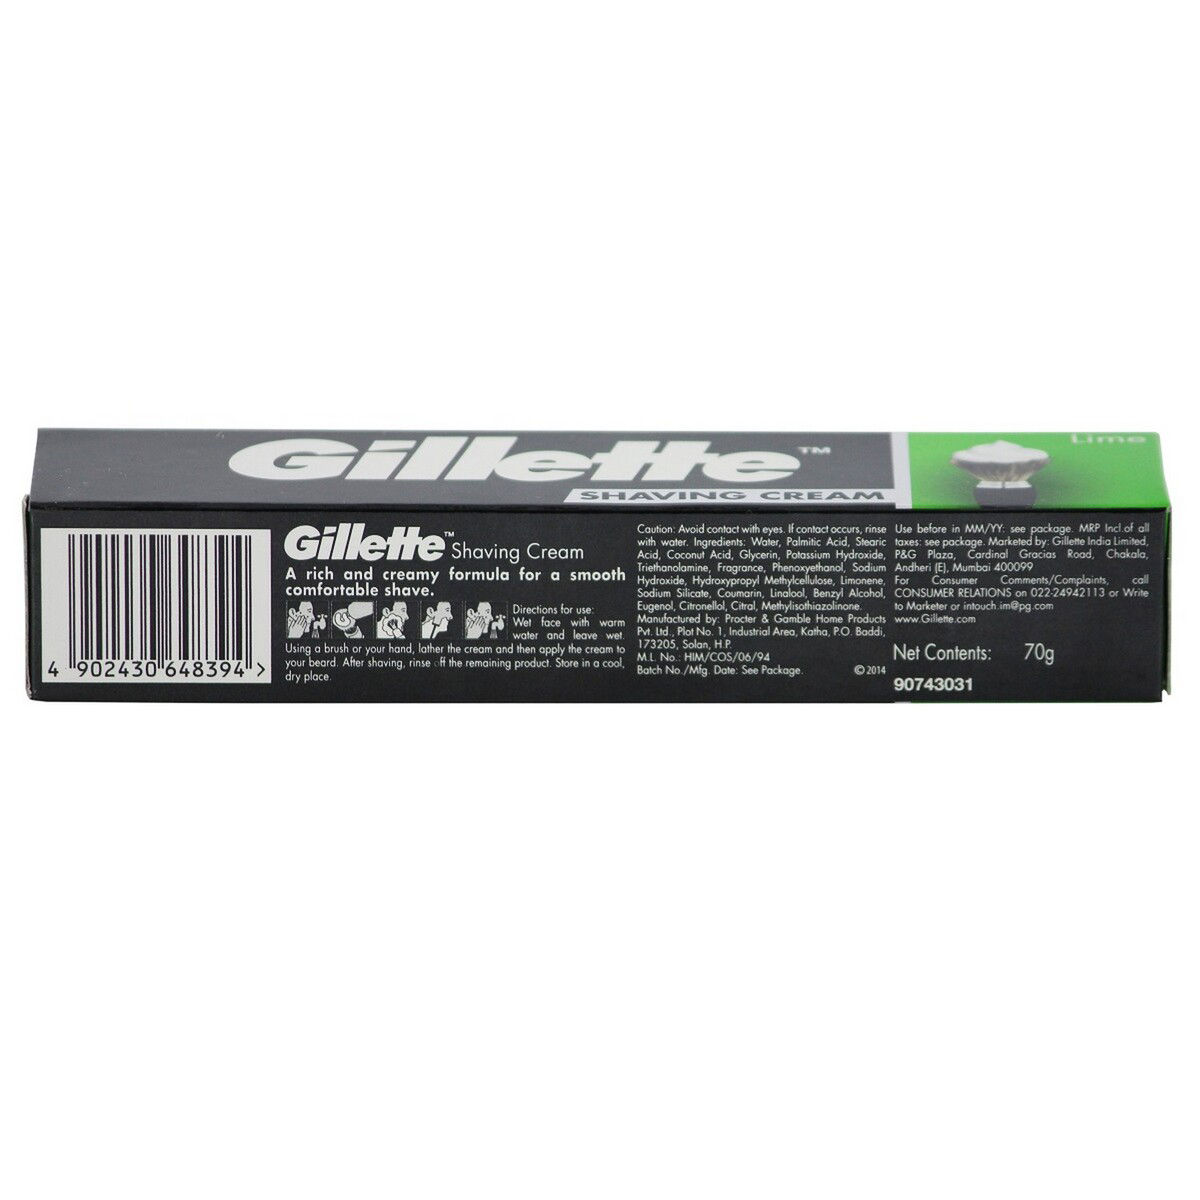 Gillette Lime Shaving Cream, 70 gm, Pack of 1 